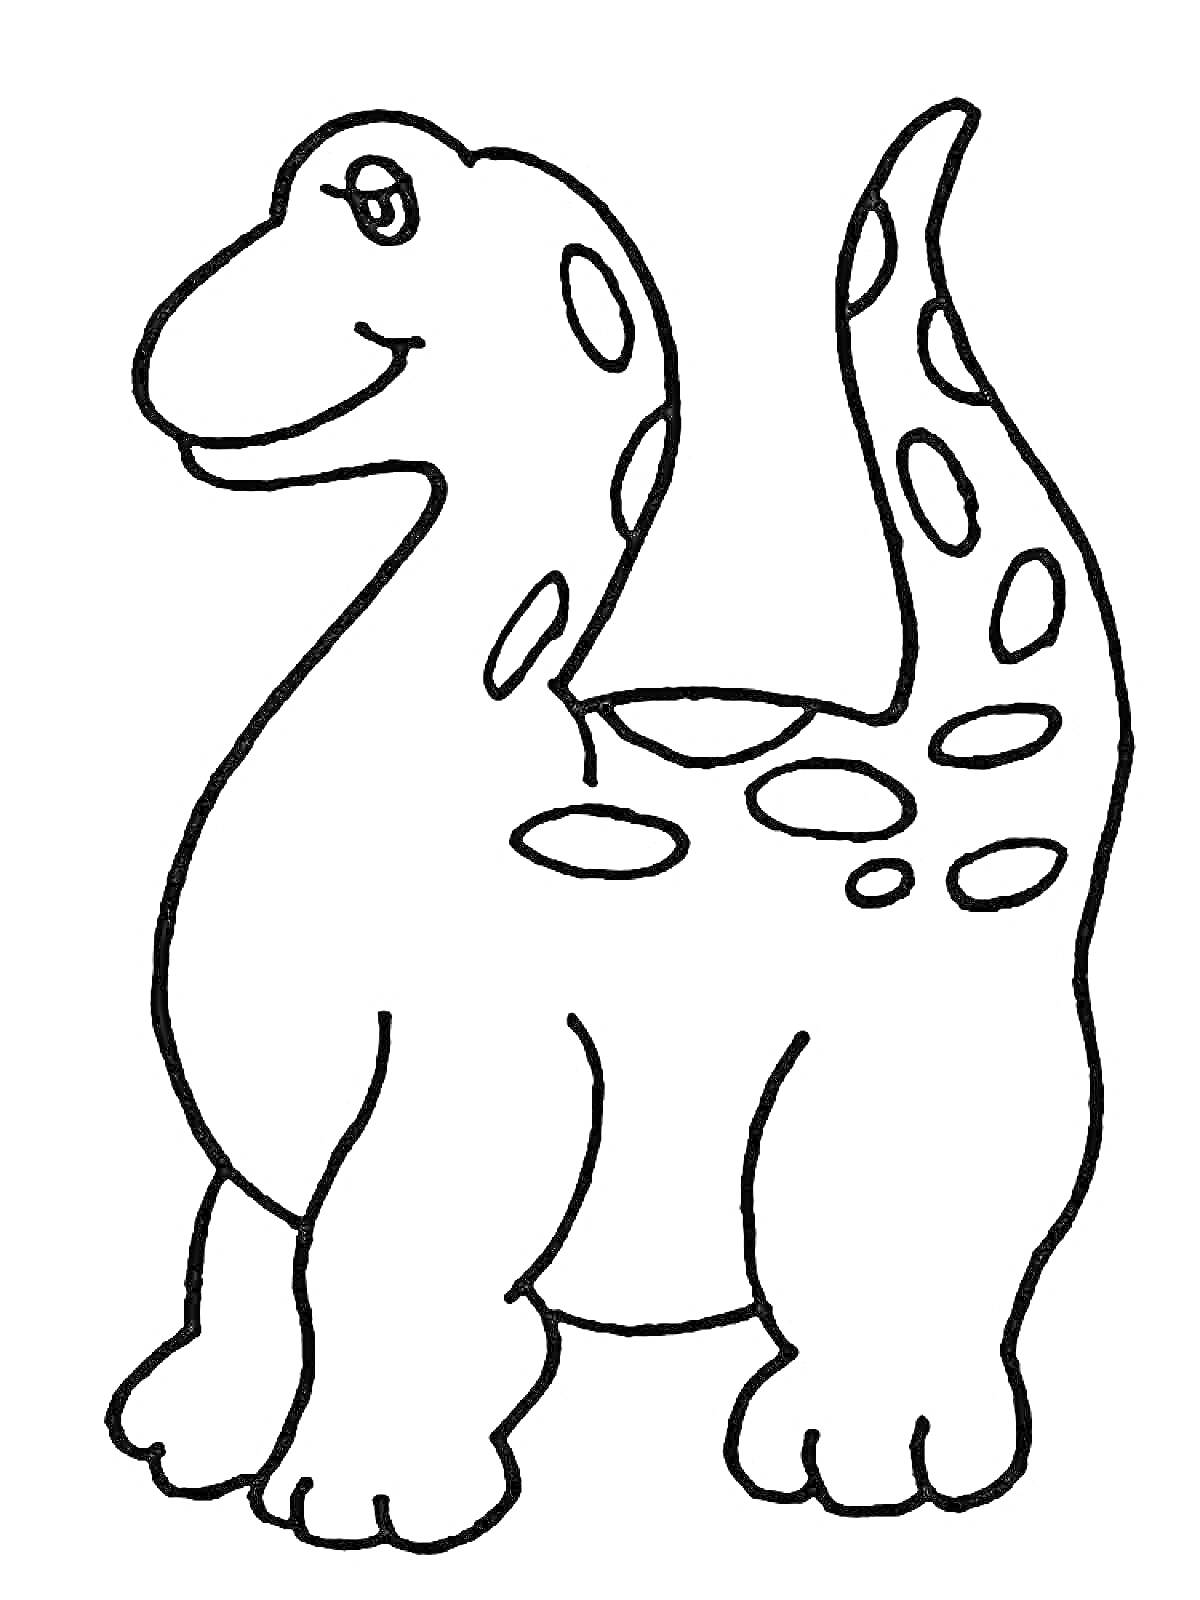 Раскраска Дружелюбный динозавр с пятнами на теле